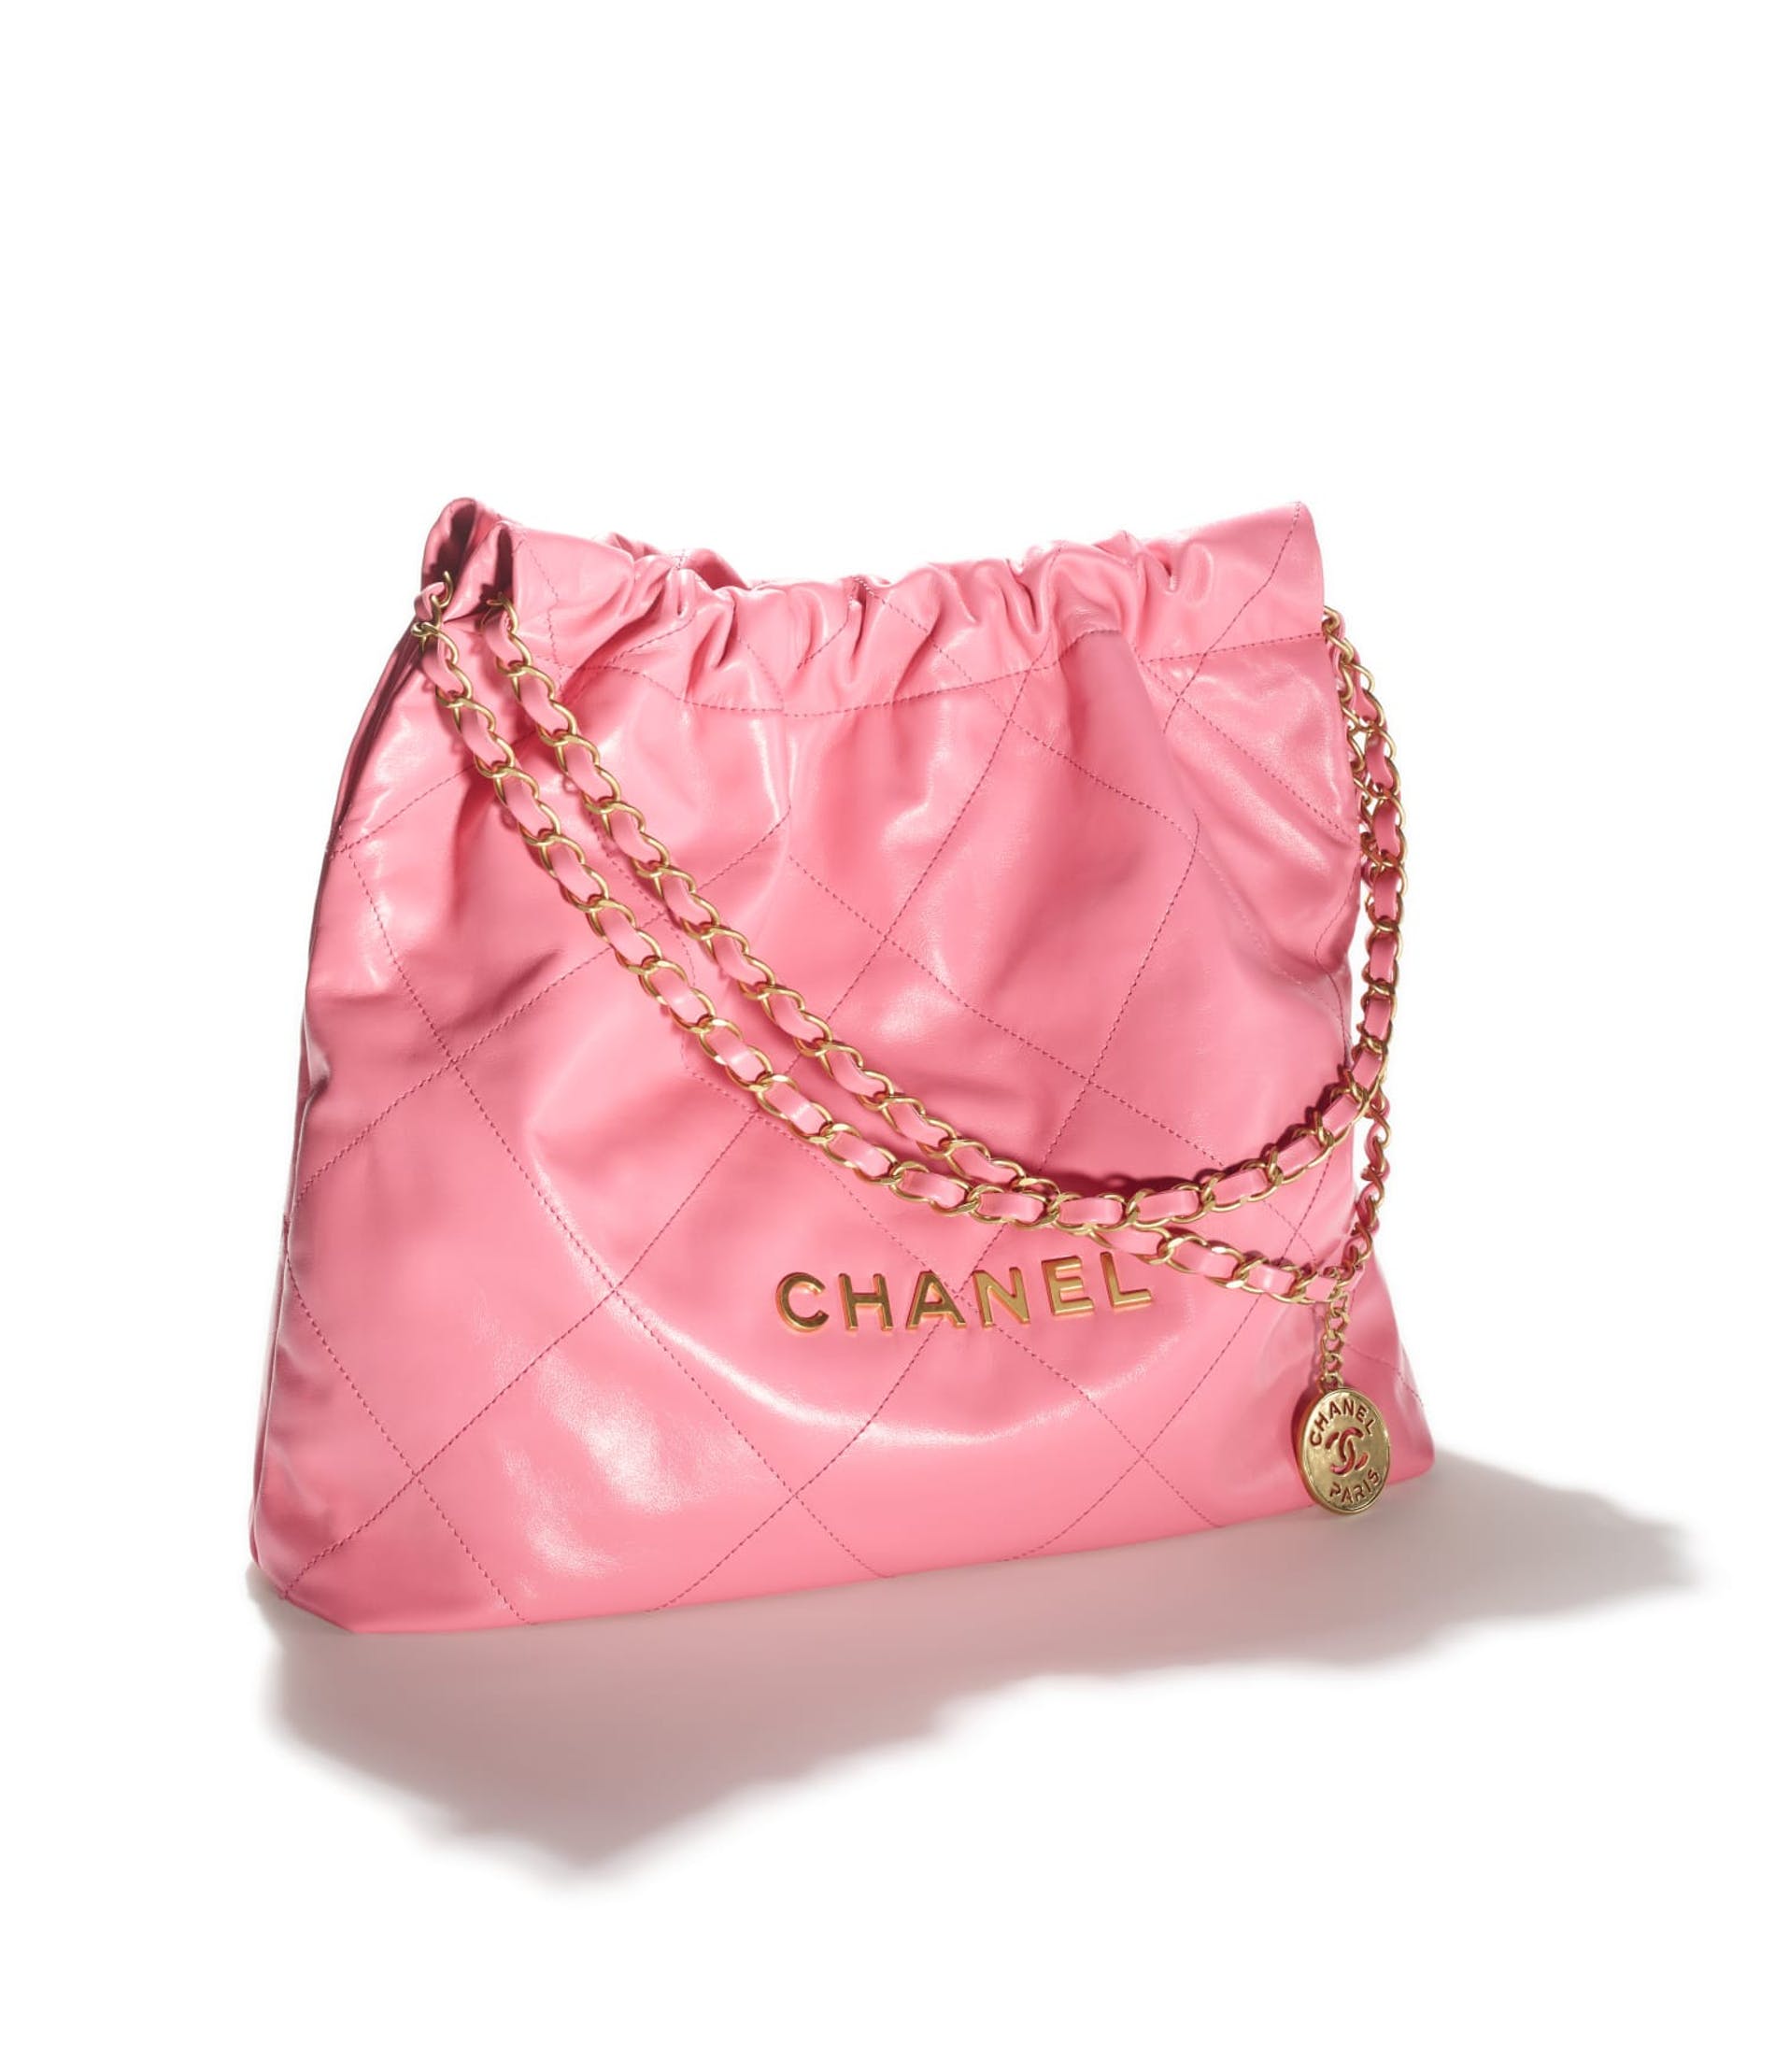 Chanel 22 es el nuevo bolso fetiche de diseño y su campaña de presentación  es “de película” – PuroDiseño